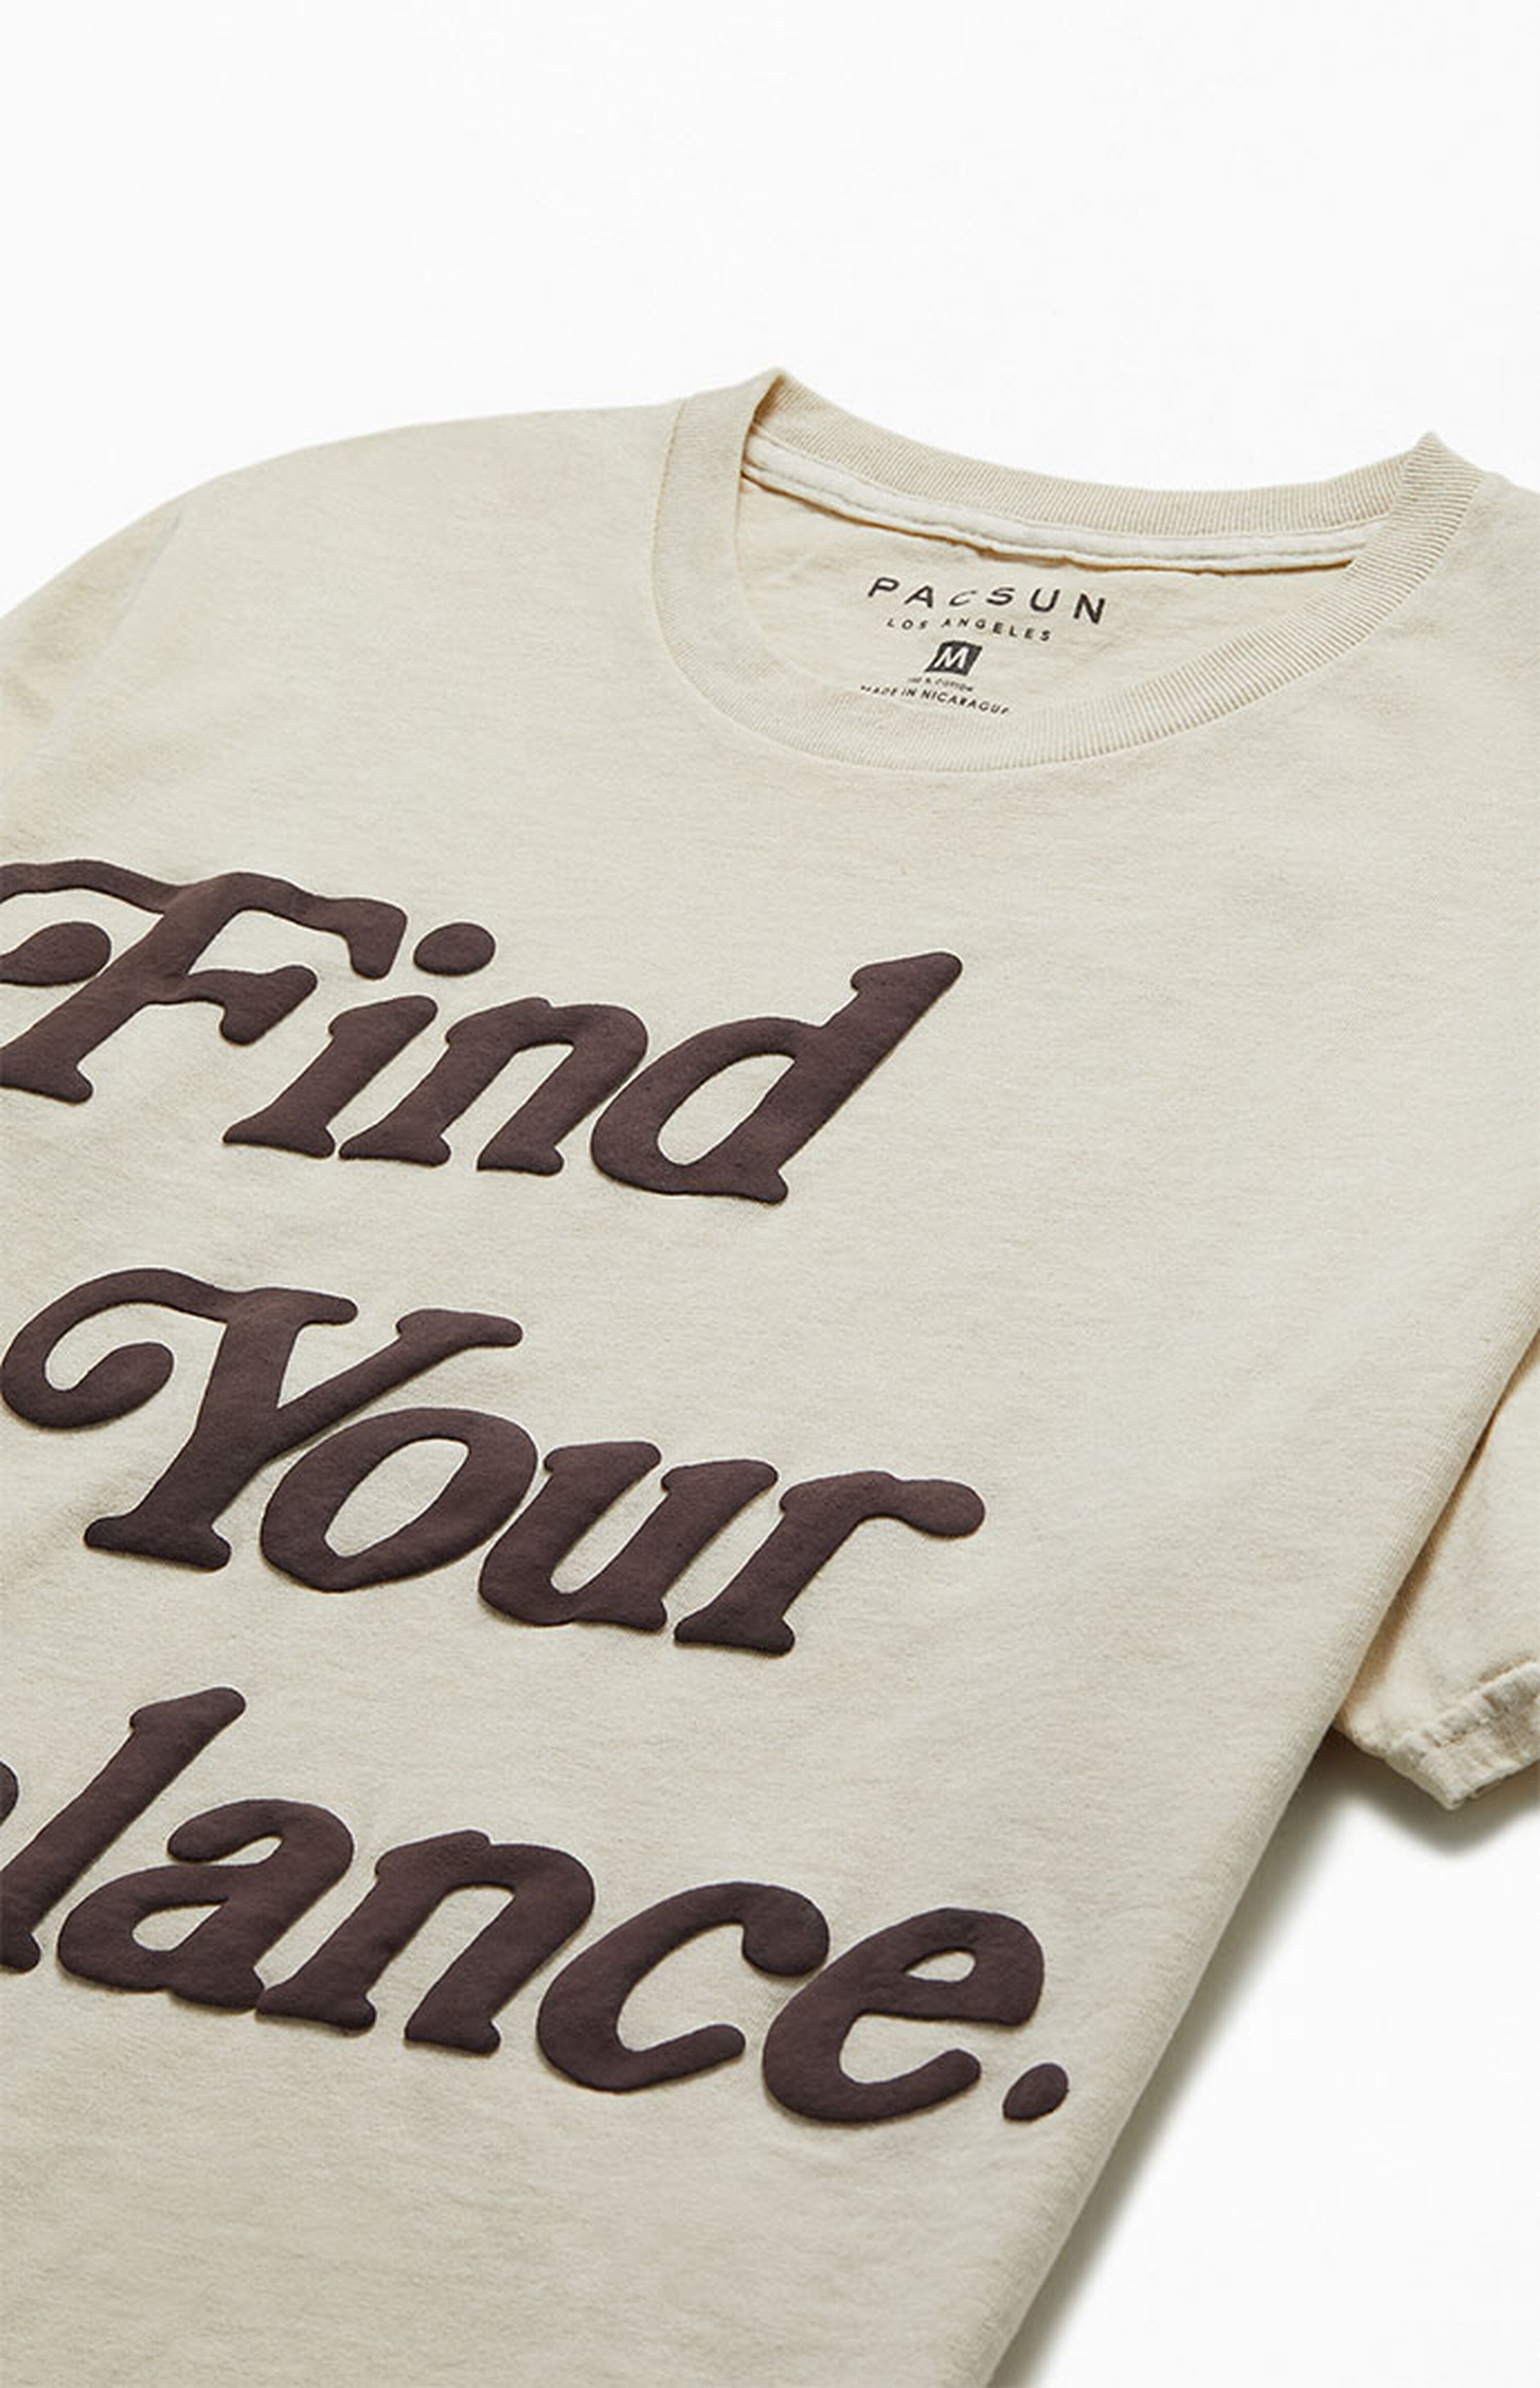 PacSun Find Your Balance Vintage T-Shirt | PacSun